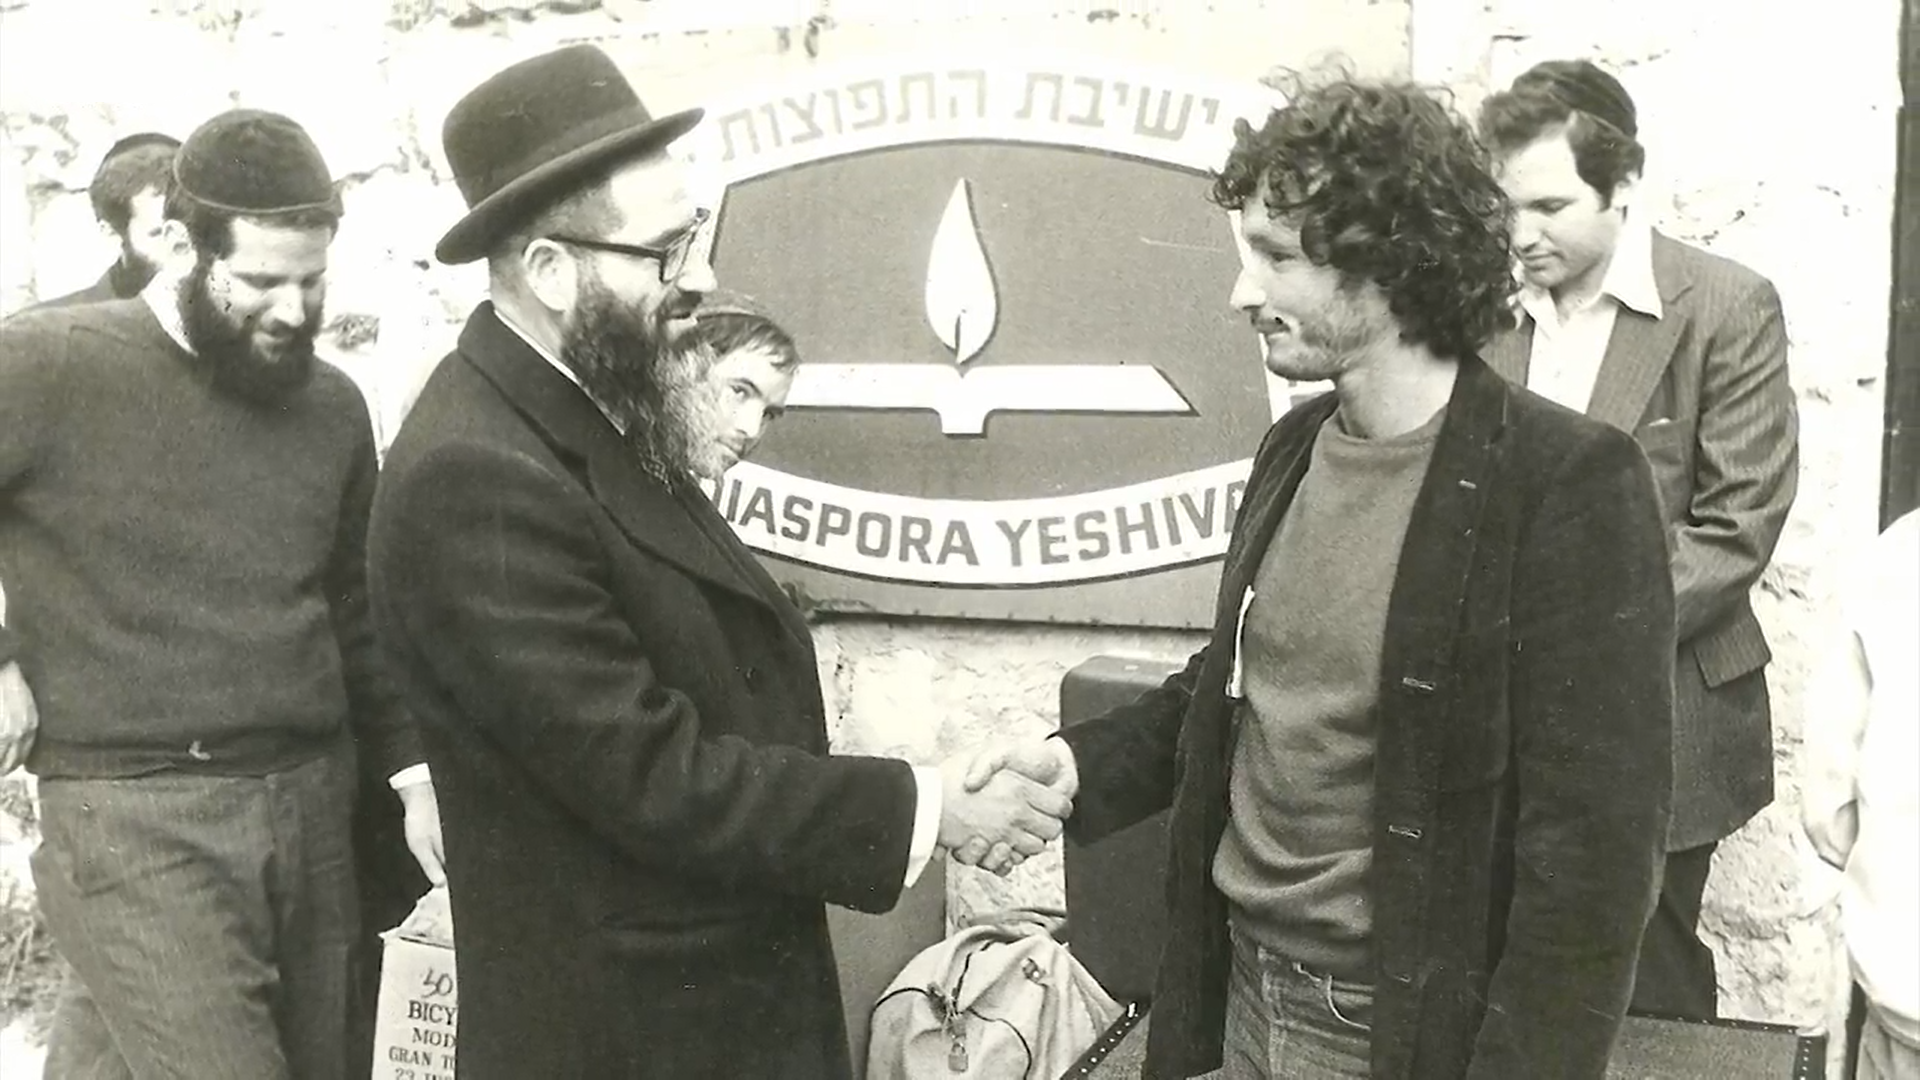 Diaspora Yeshiva History & Significance